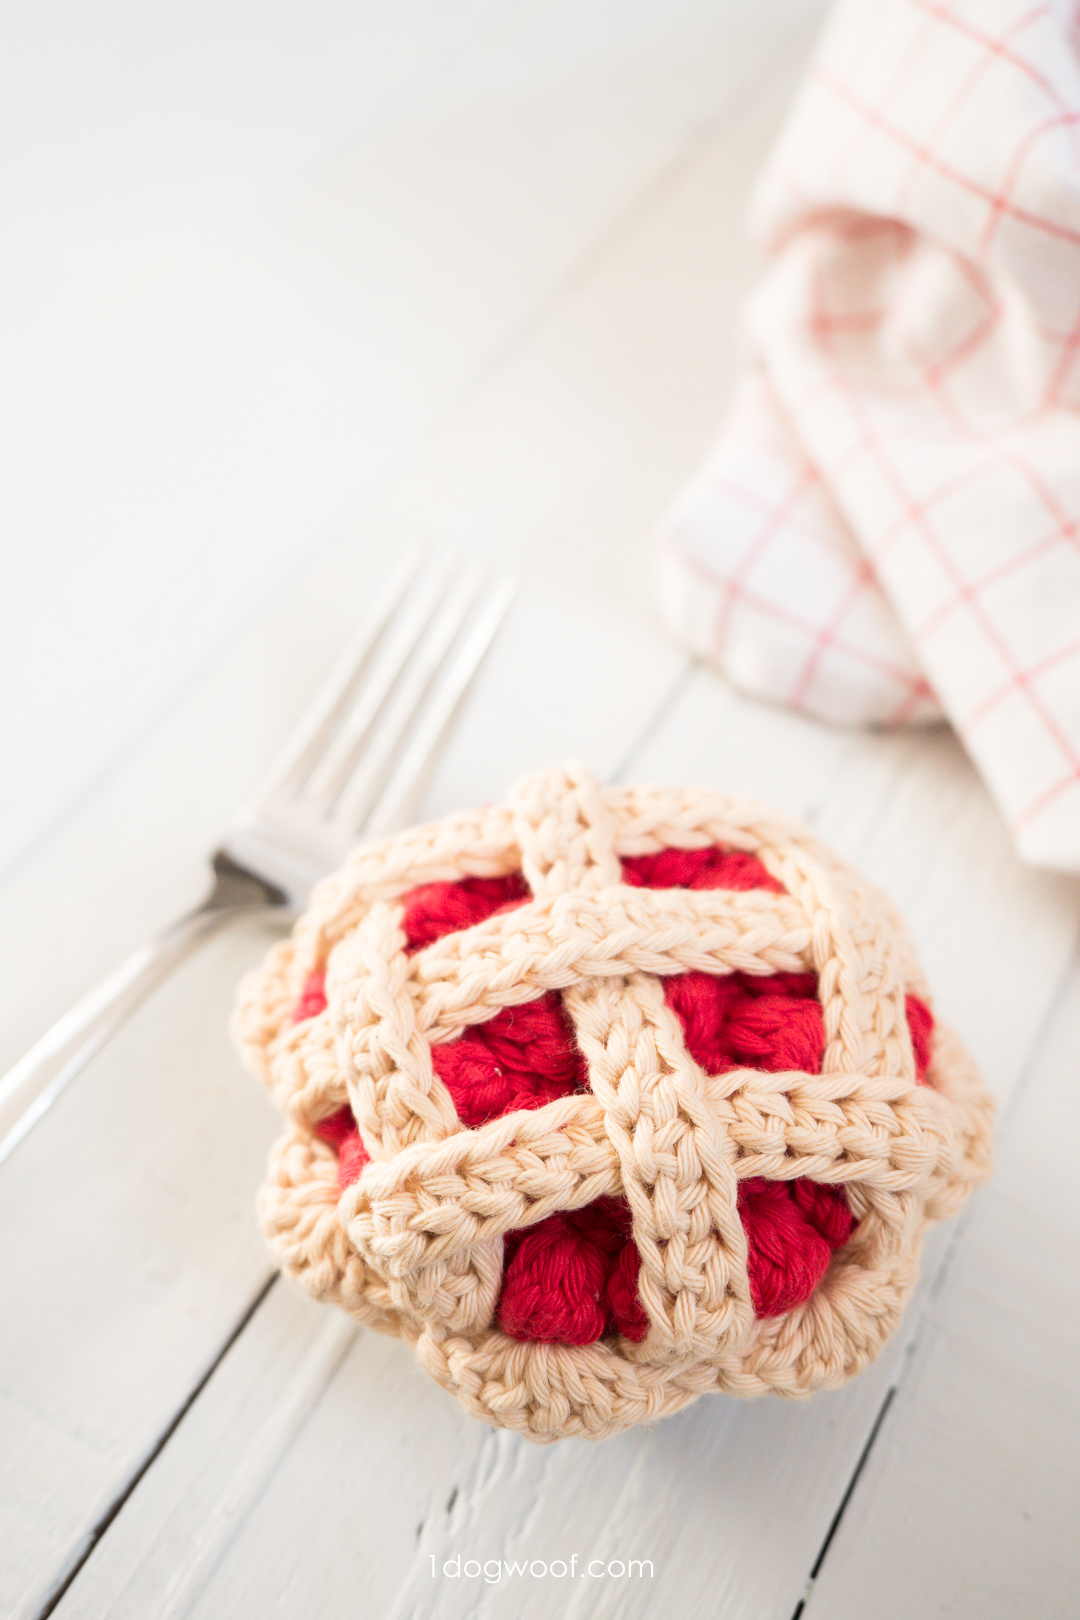 钩针编织樱桃馅饼为游戏食物或amigurumi